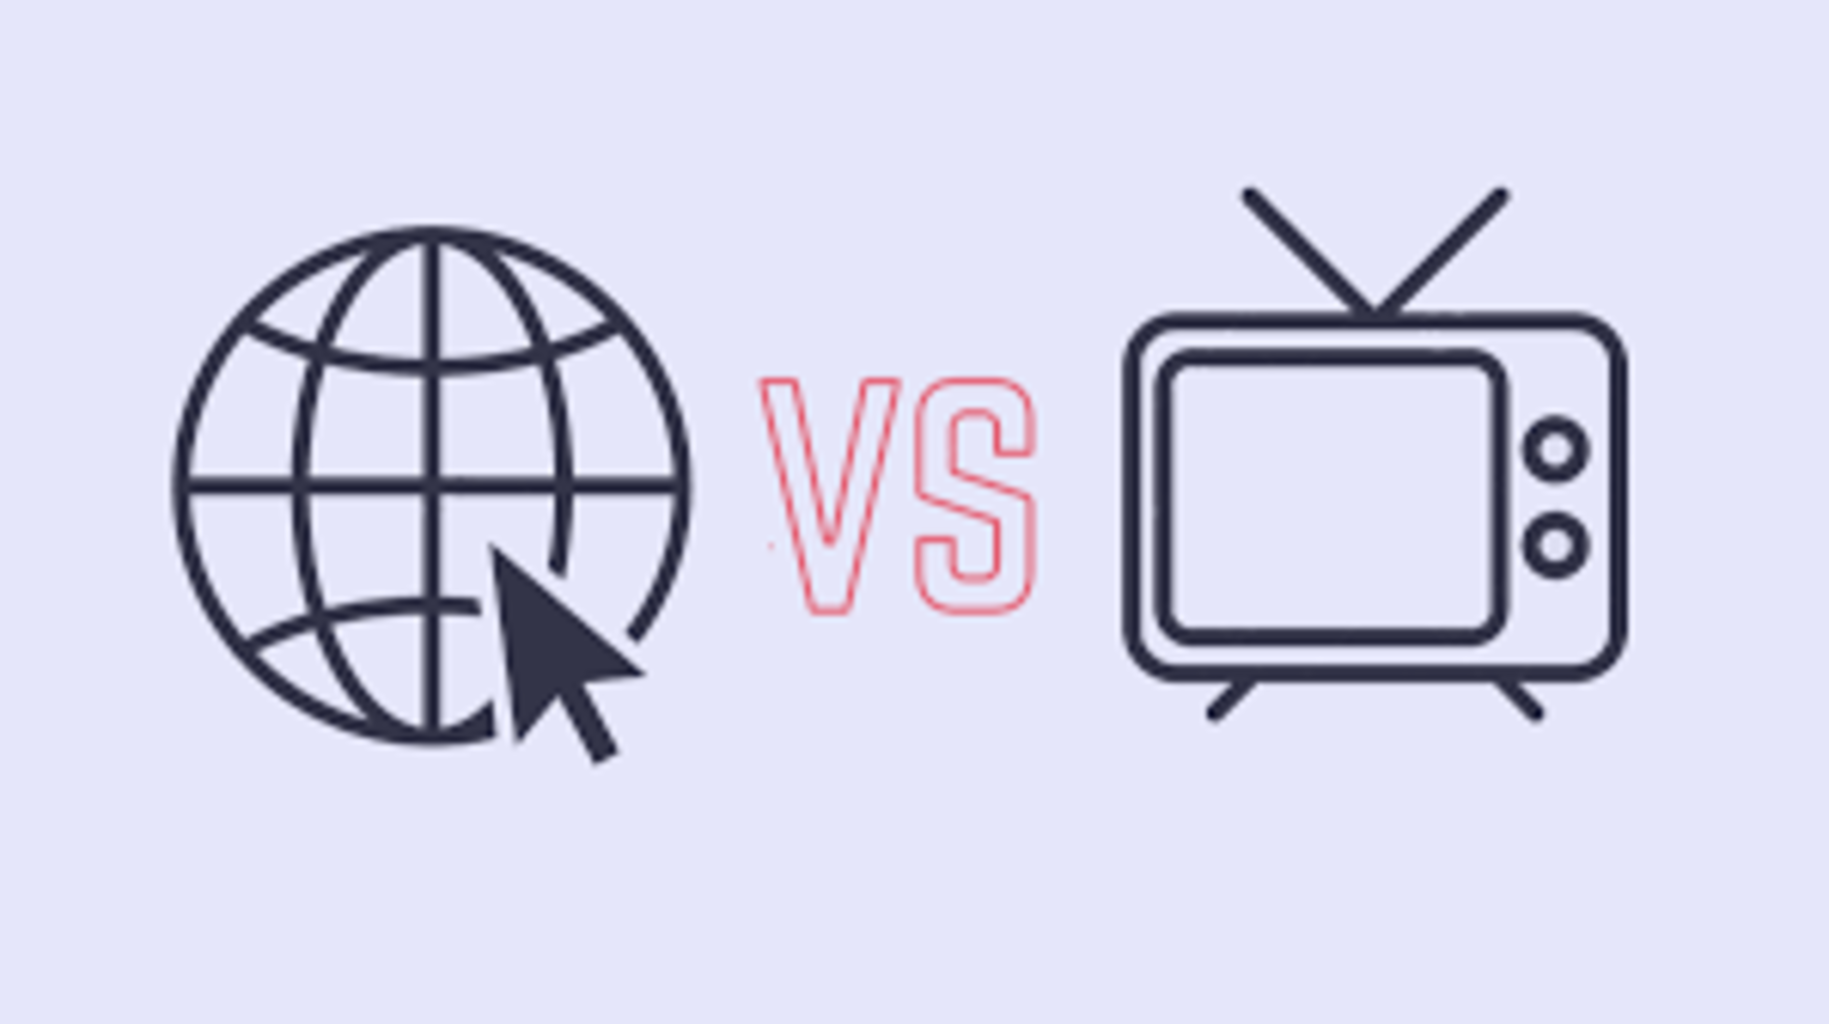 Инет тв. Интернет против телевидения. Интернет vs Телевидение. Телевизор против интернета. СМИ Телевидение интернет.